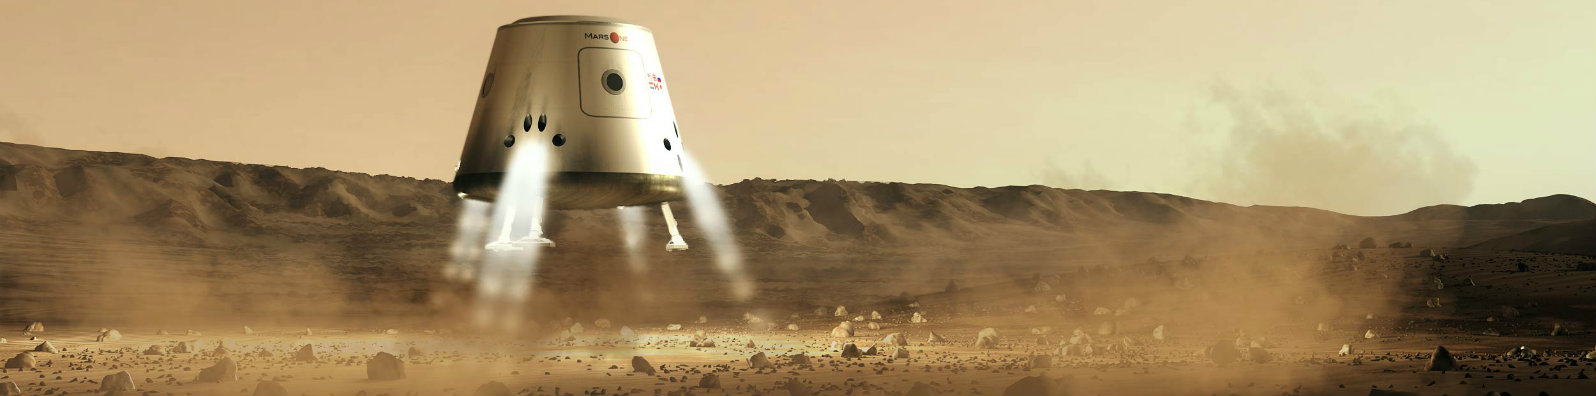 Elon Musk Mars’ı Kolonileştirme Fikirlerini Açıkladı [27.09.2016]